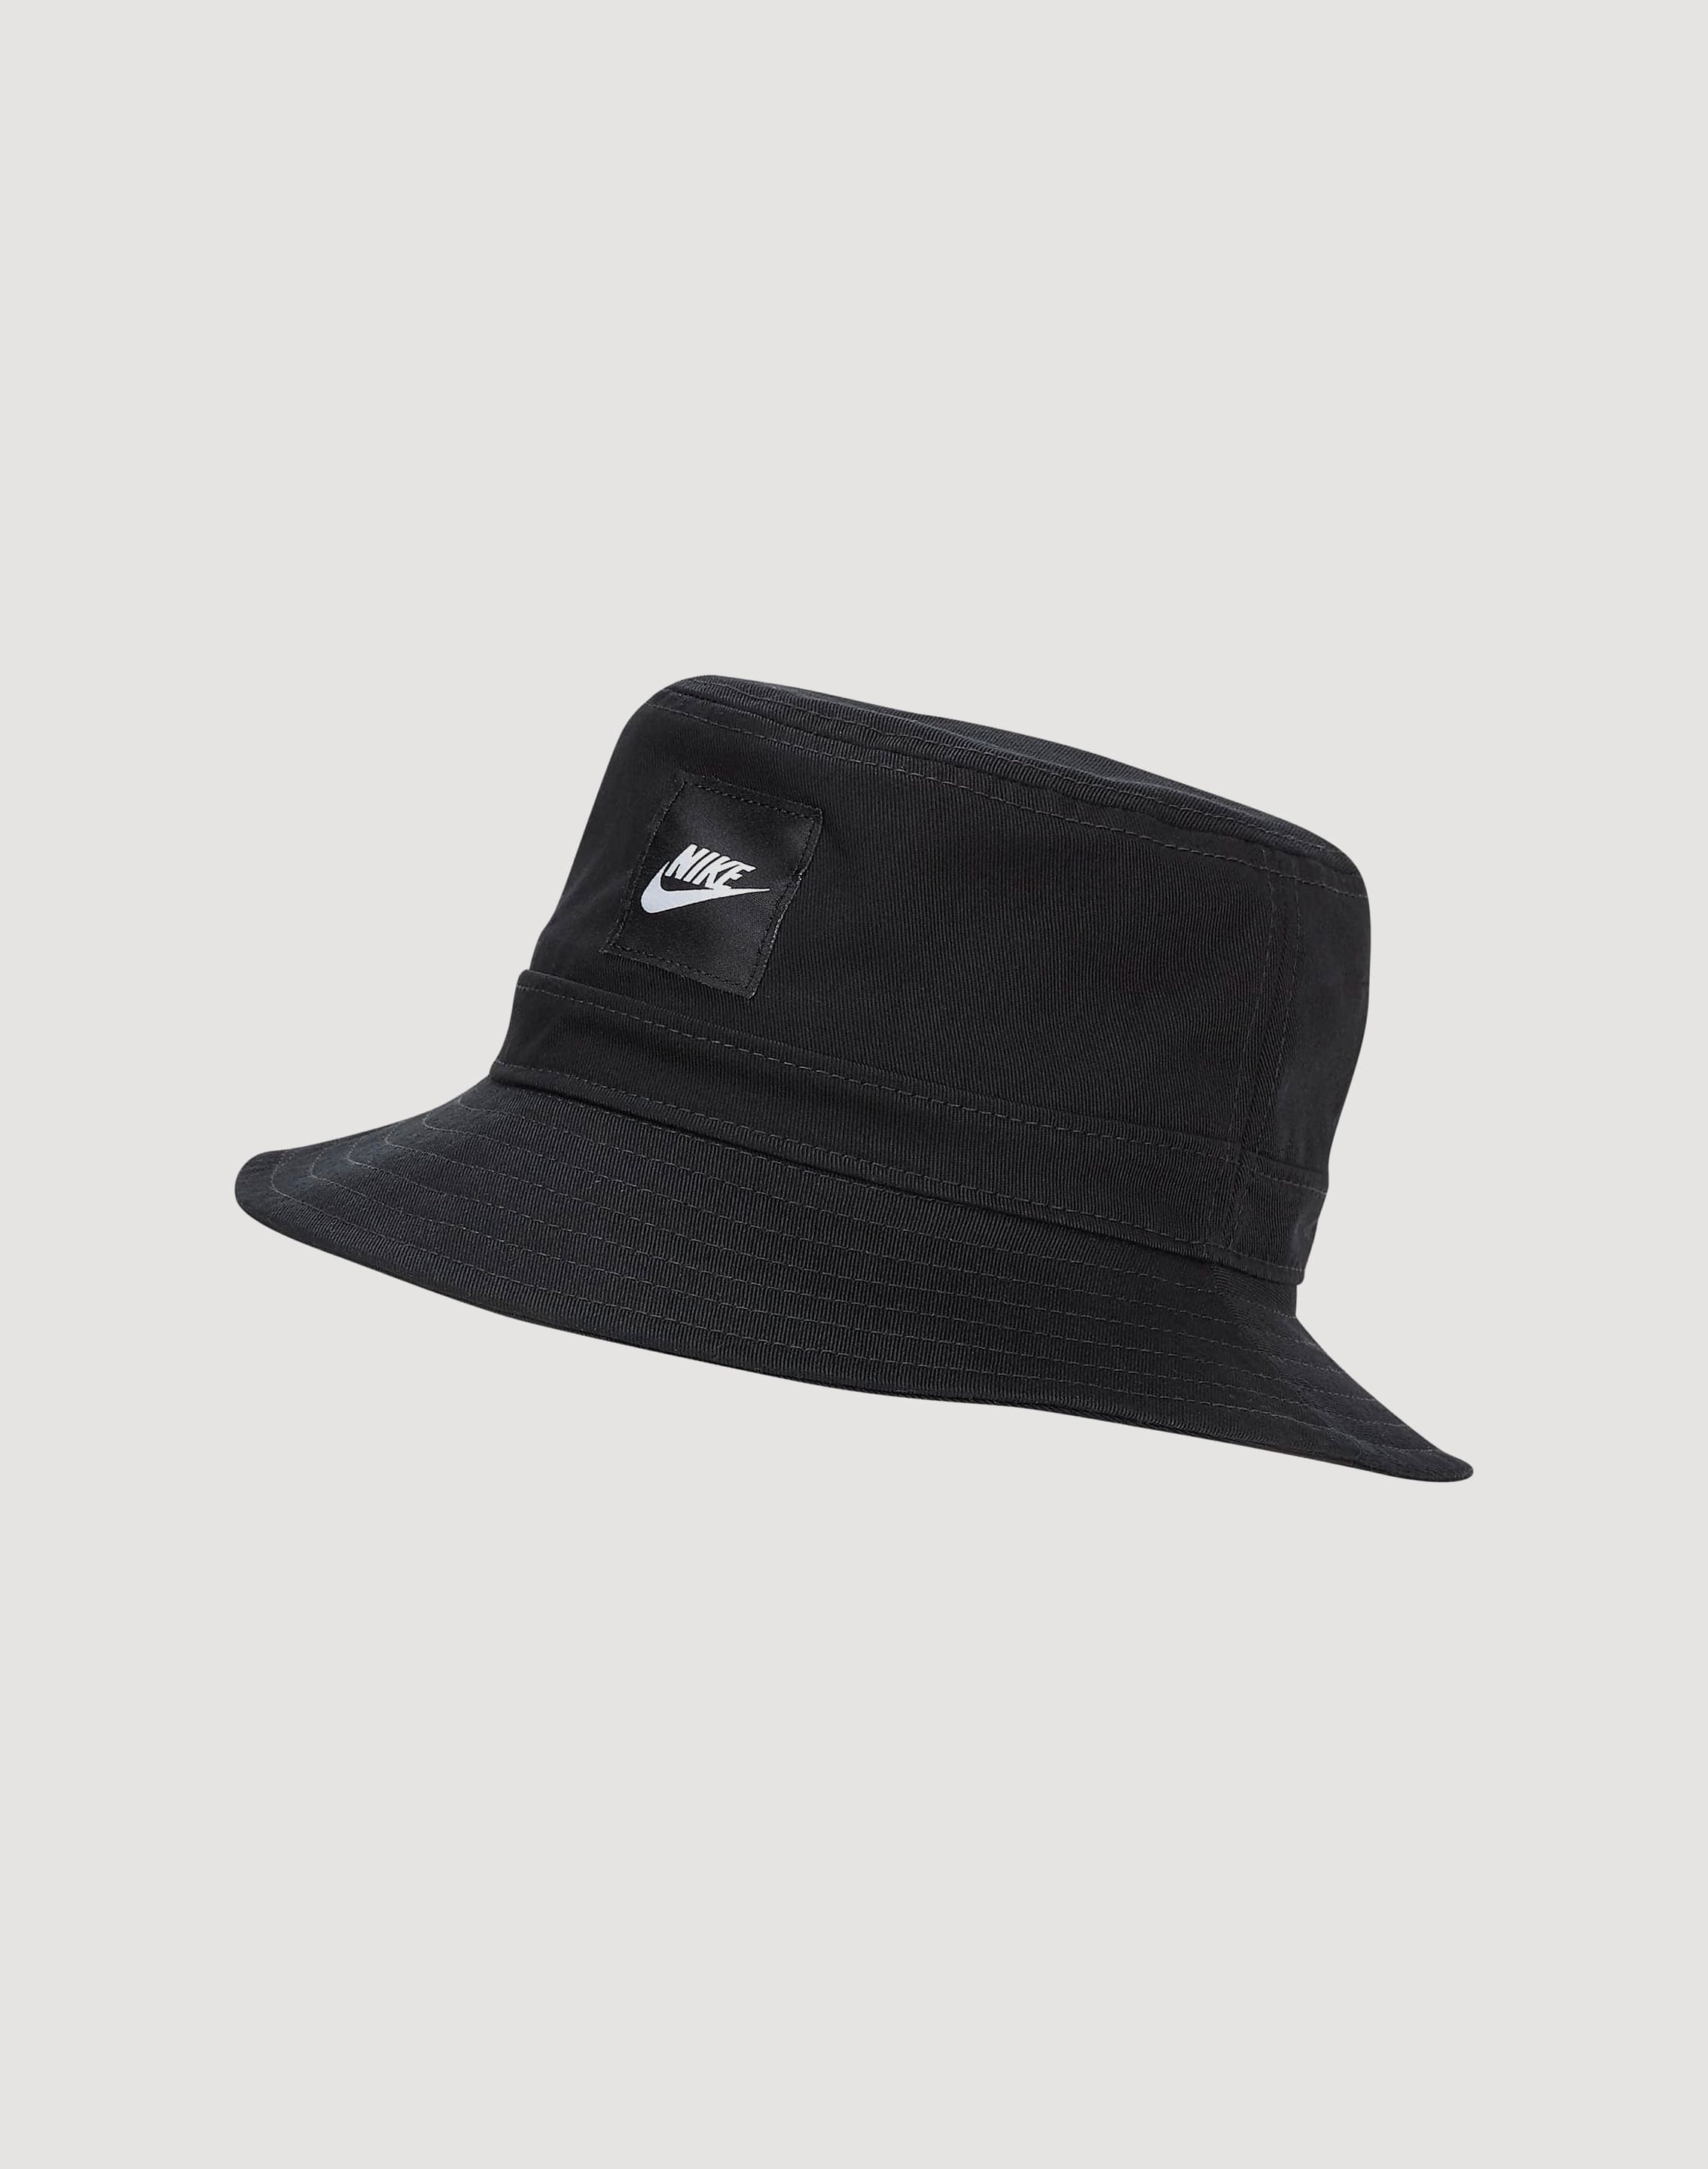 Nike Kids' Bucket Hat - Black - L/XL